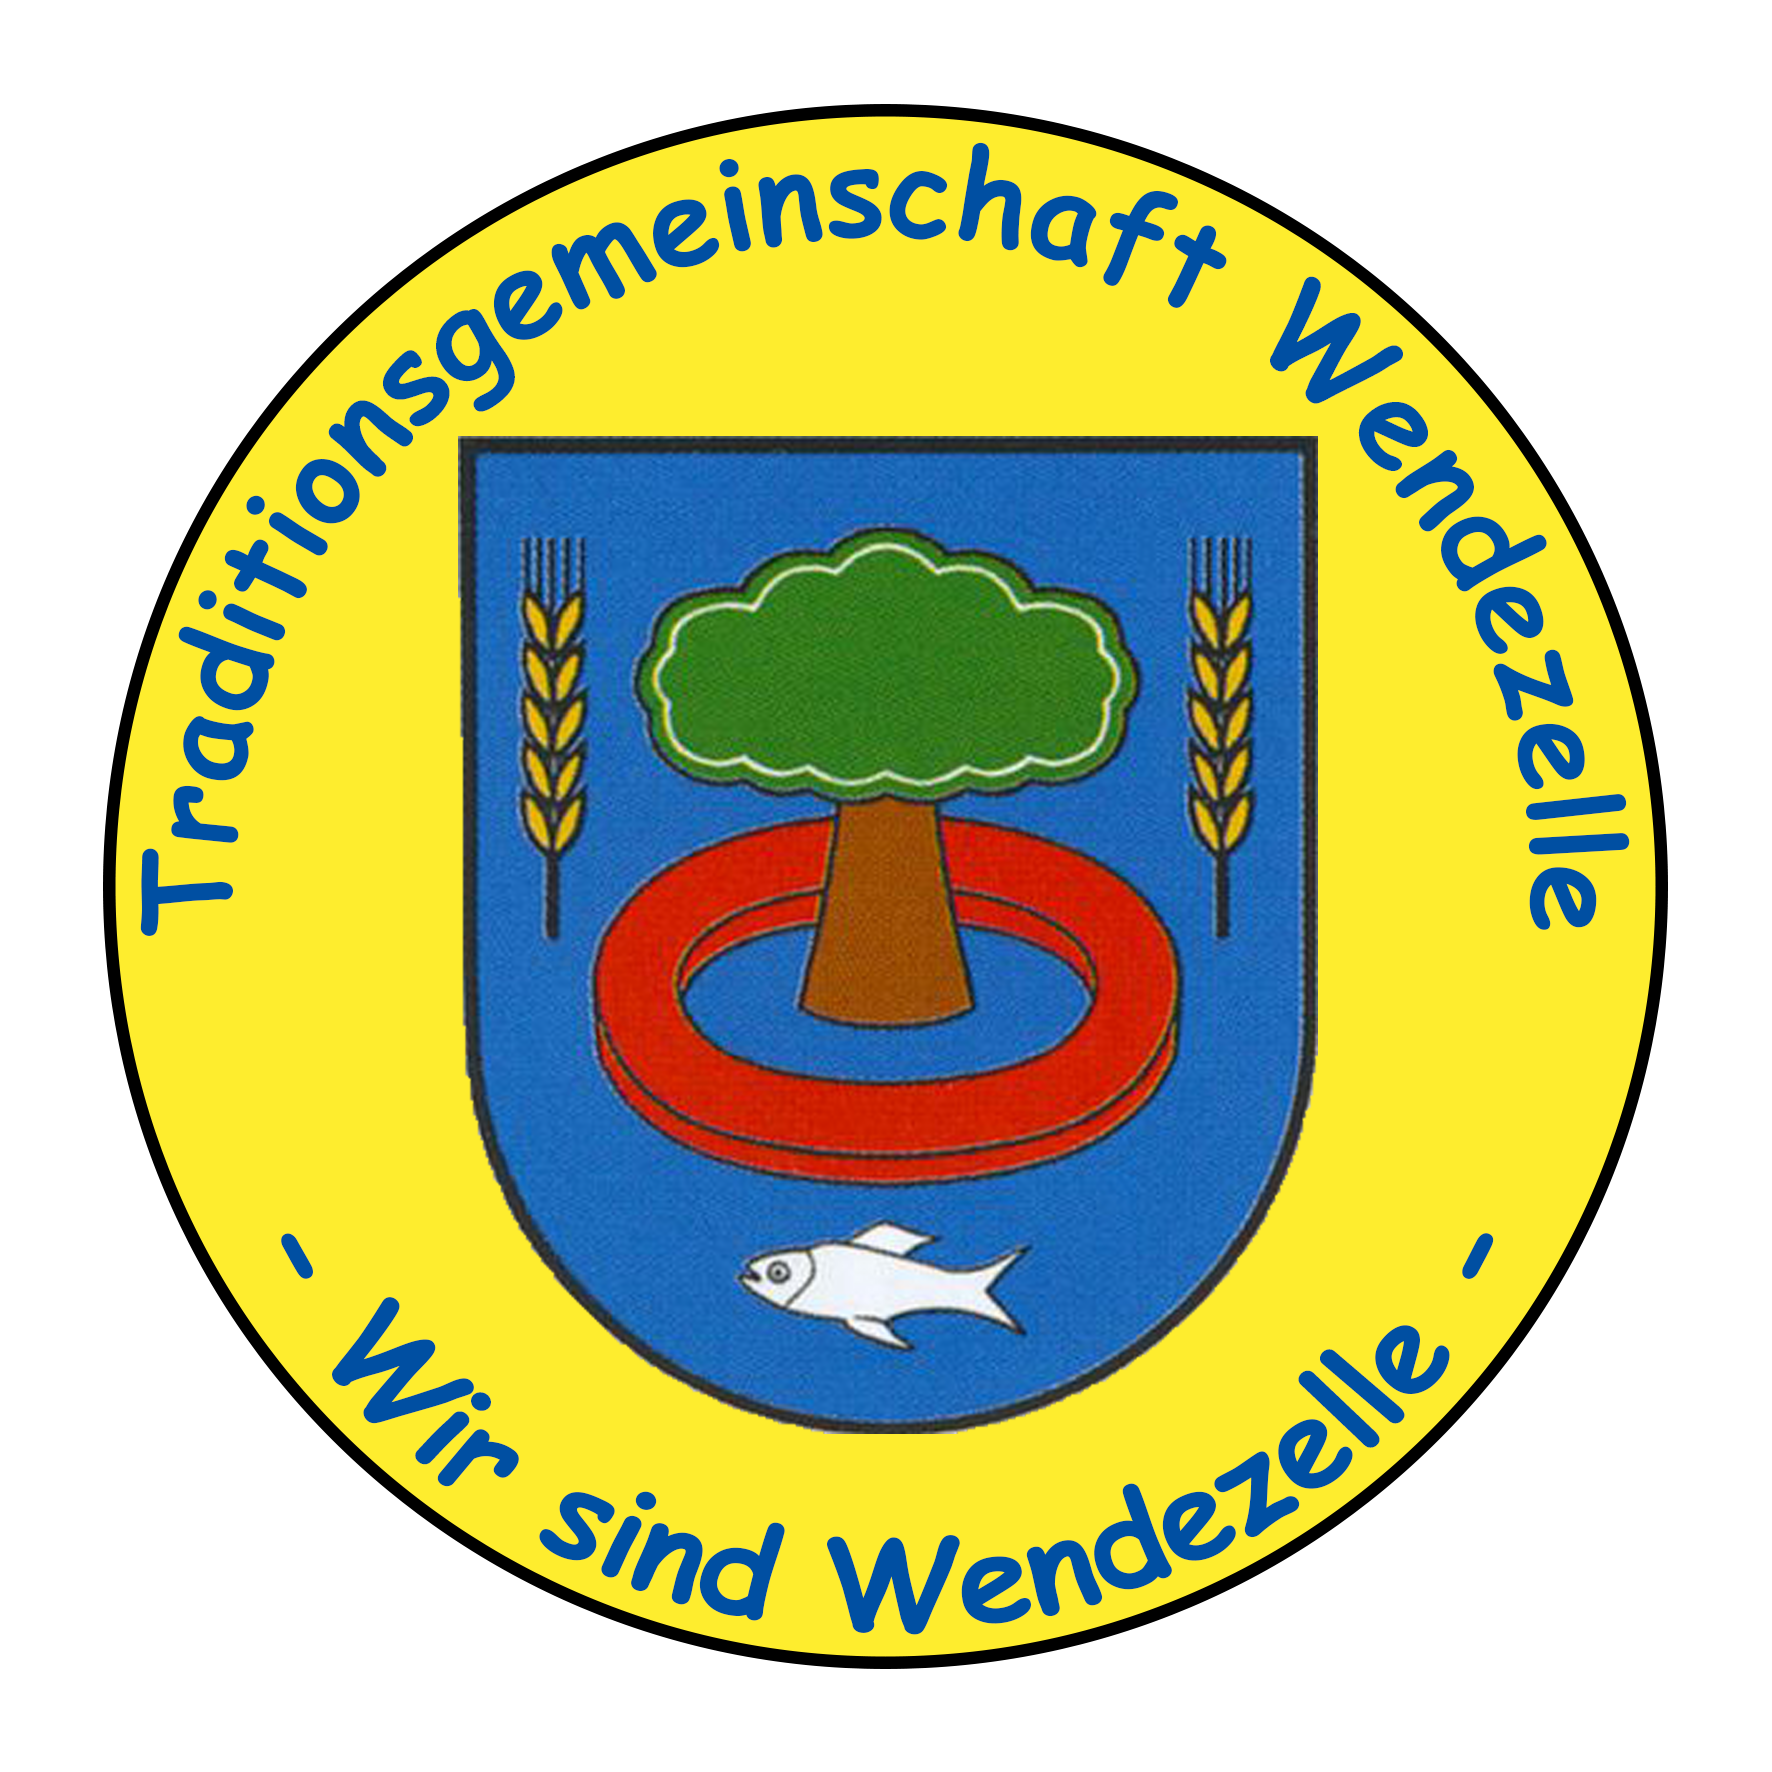 Traditionsgemeinschaft Wendezelle